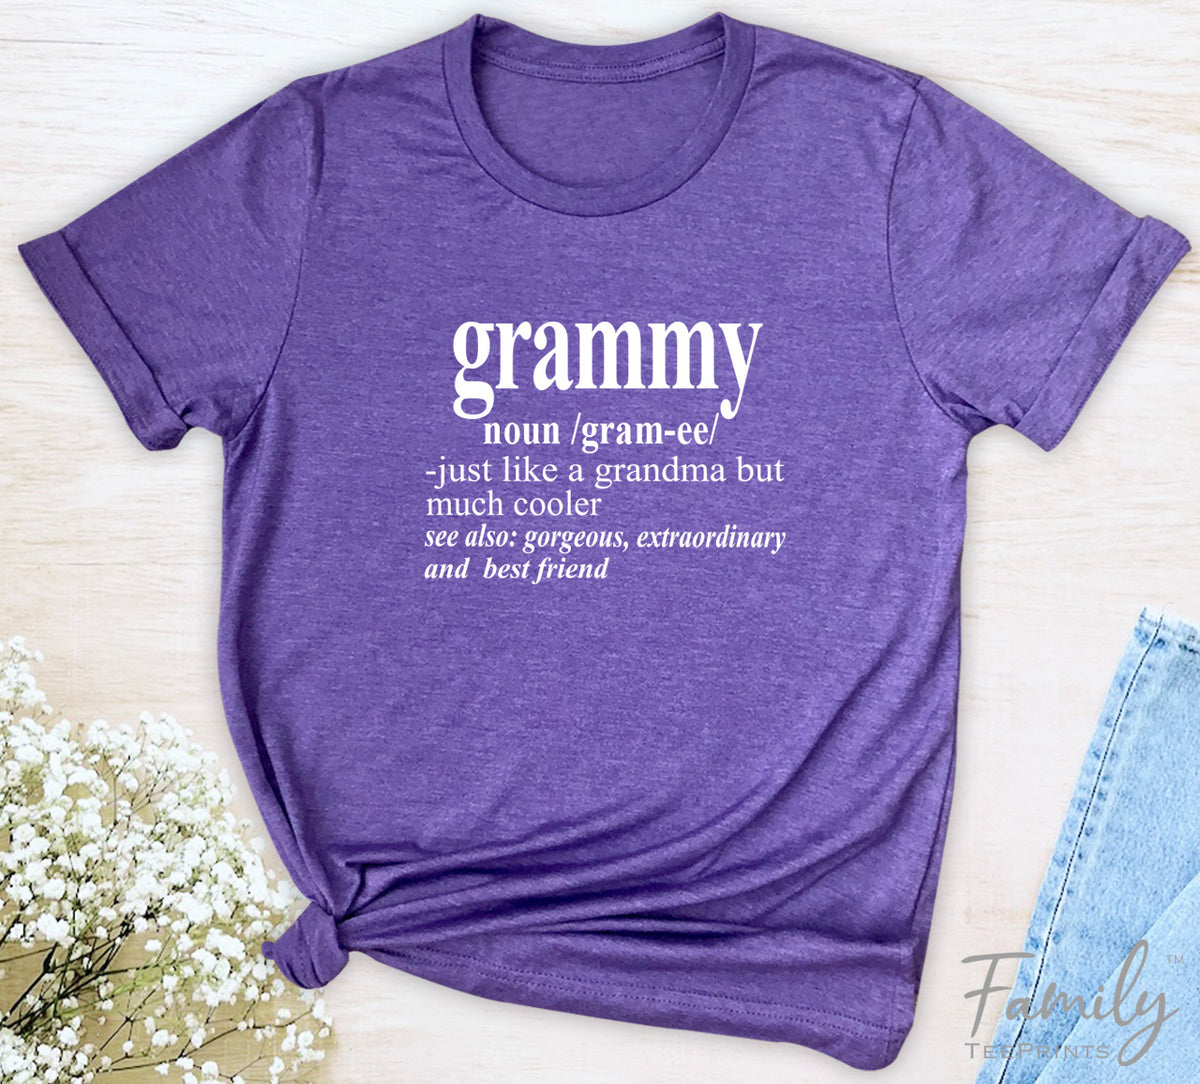 Grammy Noun - Unisex T-shirt - Grammy Shirt - Gift Fo Grammy - familyteeprints